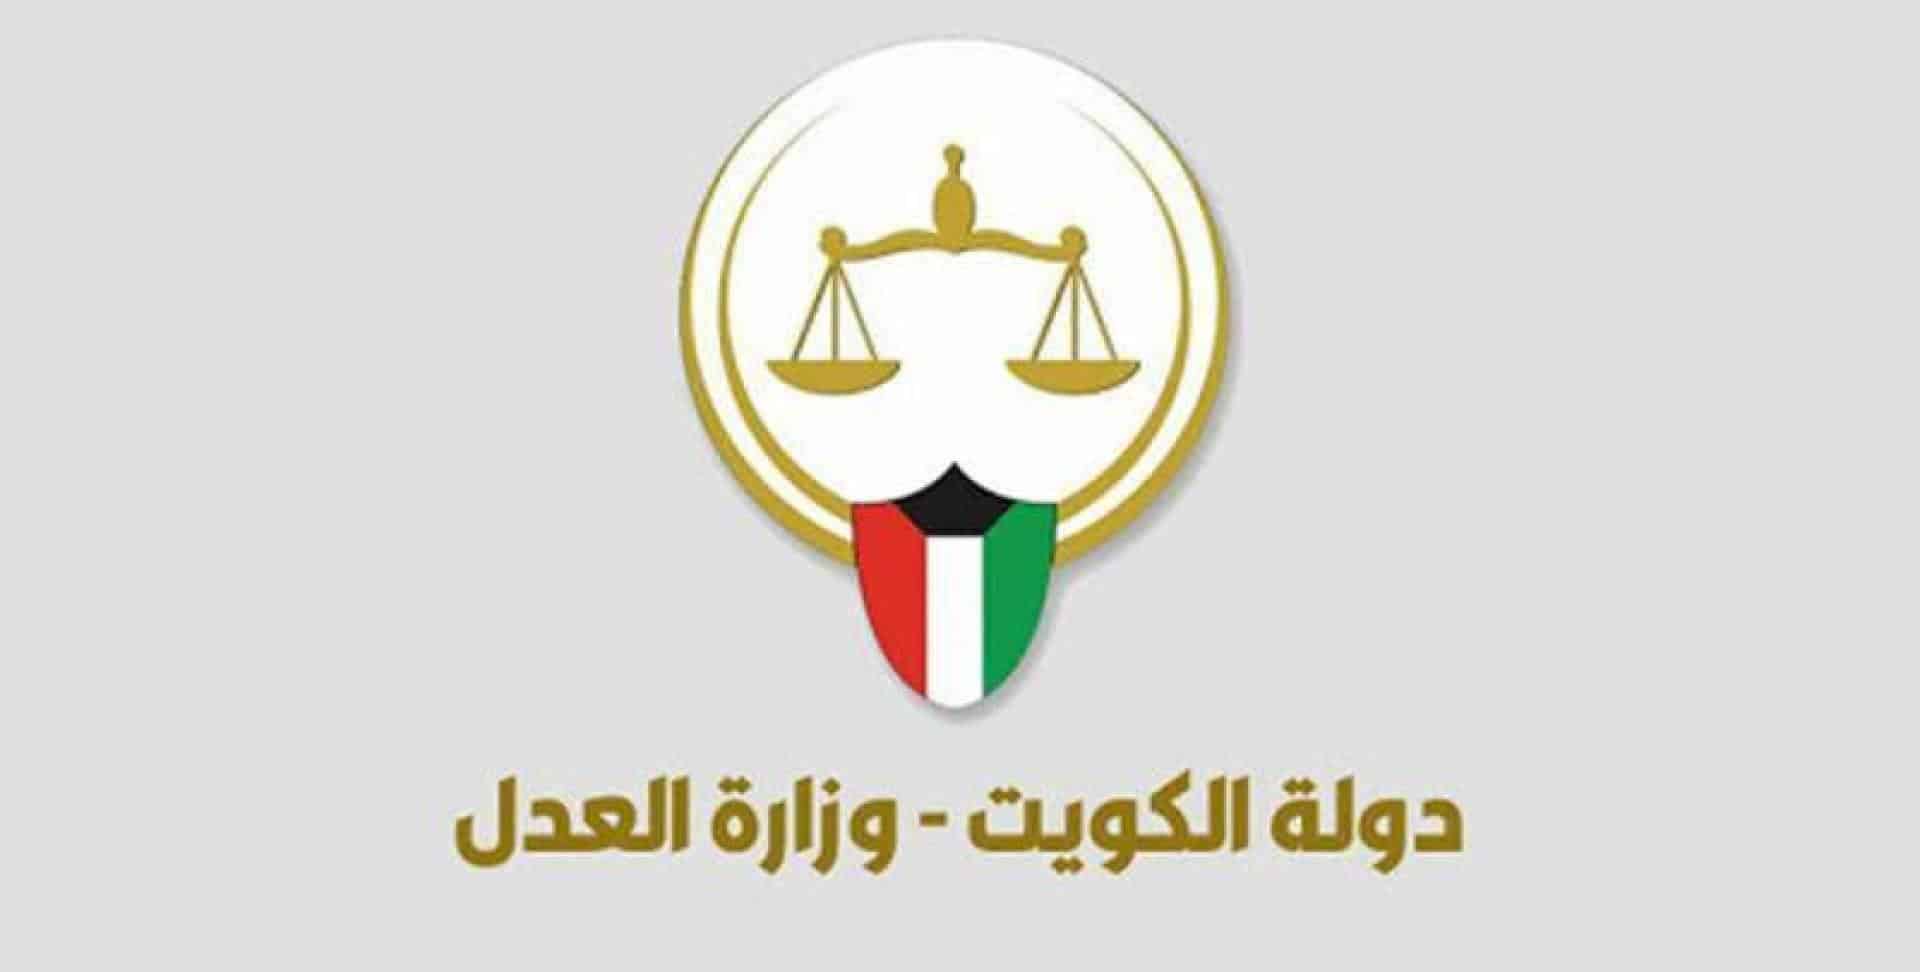  رابط الاستعلام عن تنفيذ الأحكام بالرقم المدني في الكويت